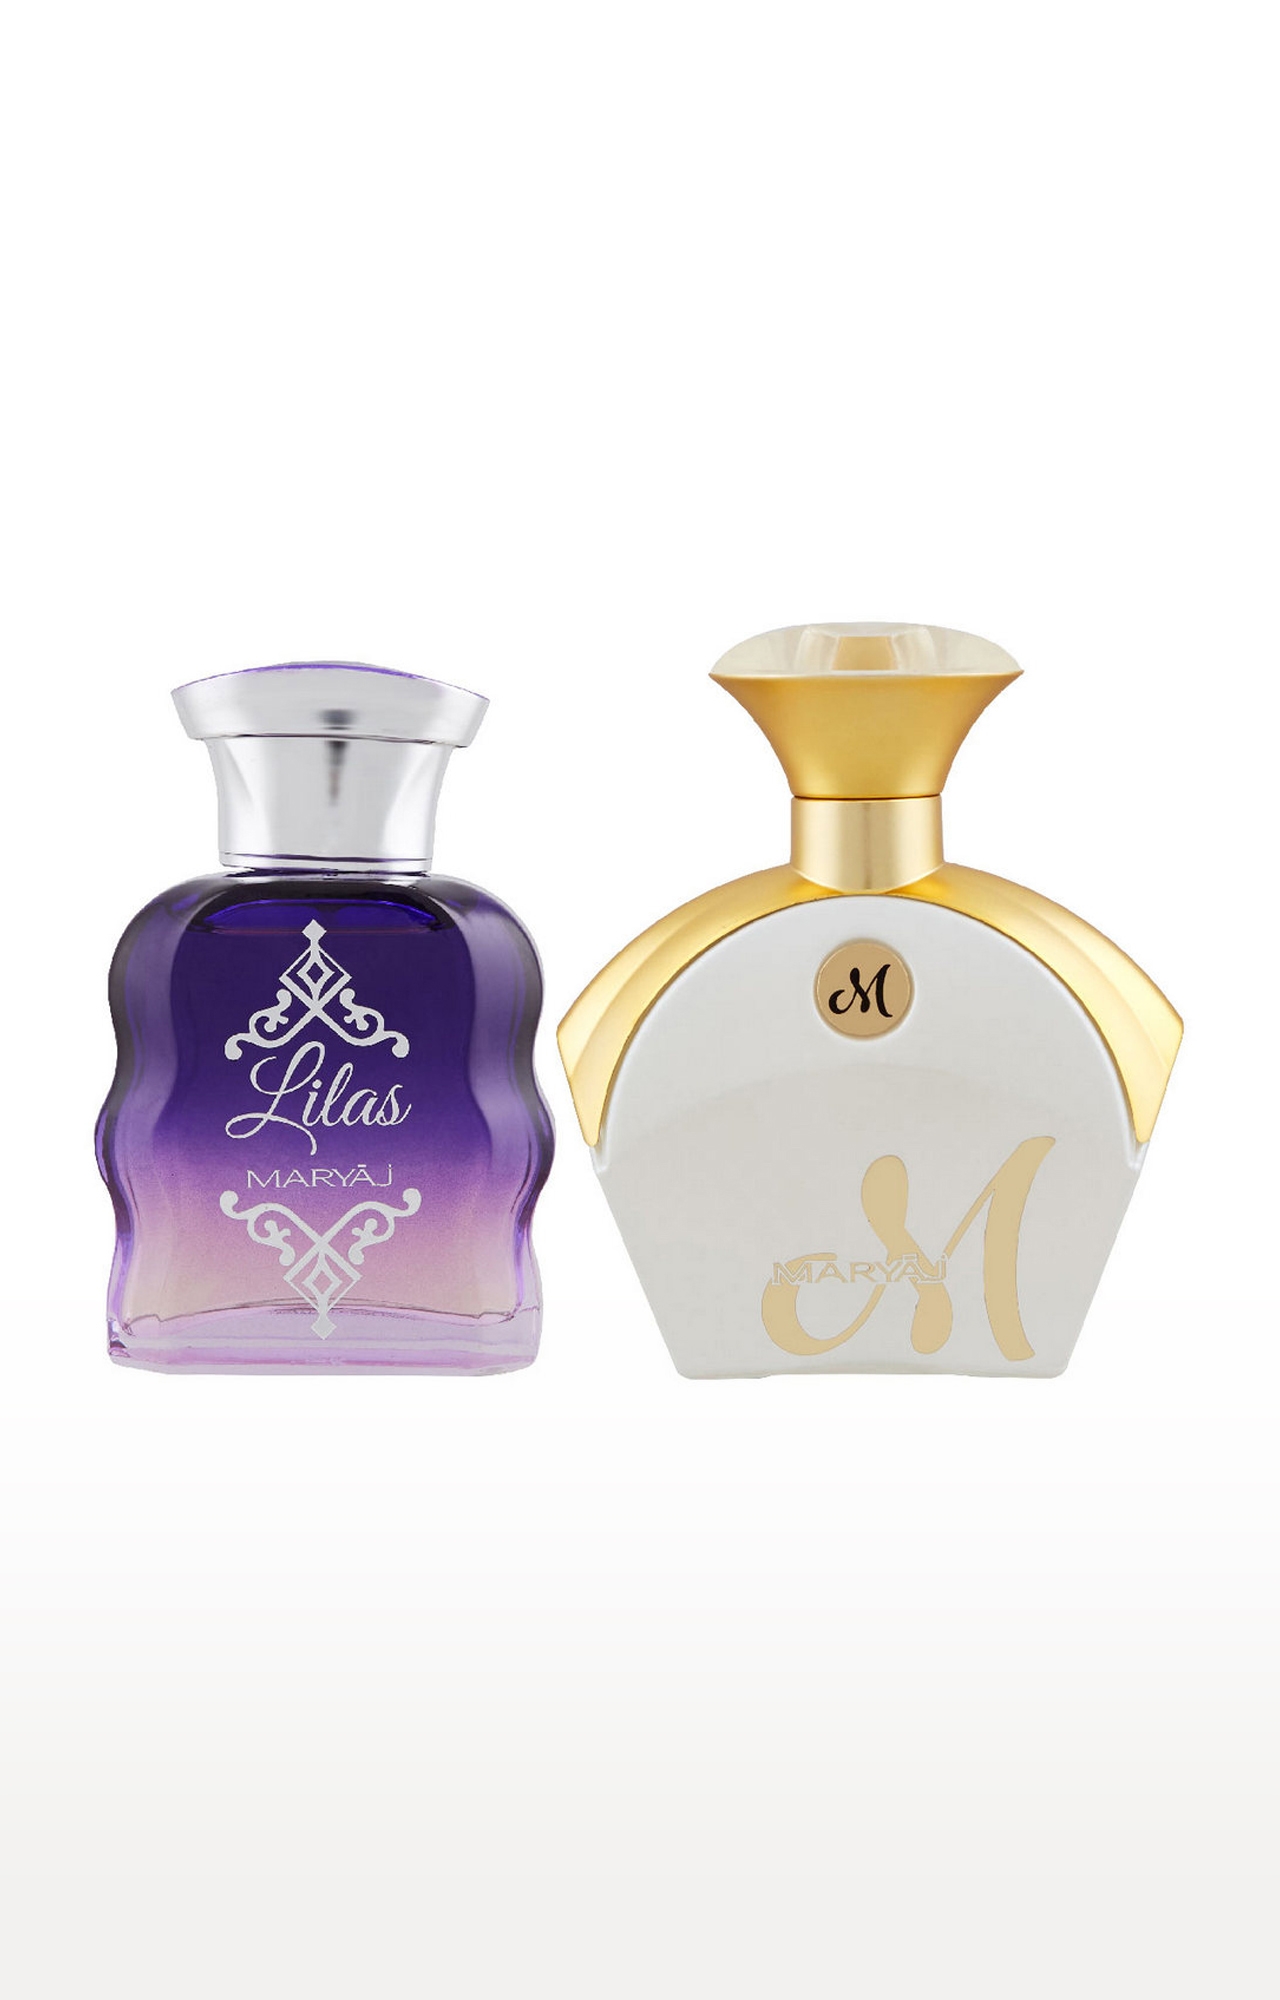 Maryaj | Maryaj Lilas Eau De Parfum Perfume 100ml for Women and Maryaj M White for Her Eau De Parfum Fruity Perfume 90ml for Women 0